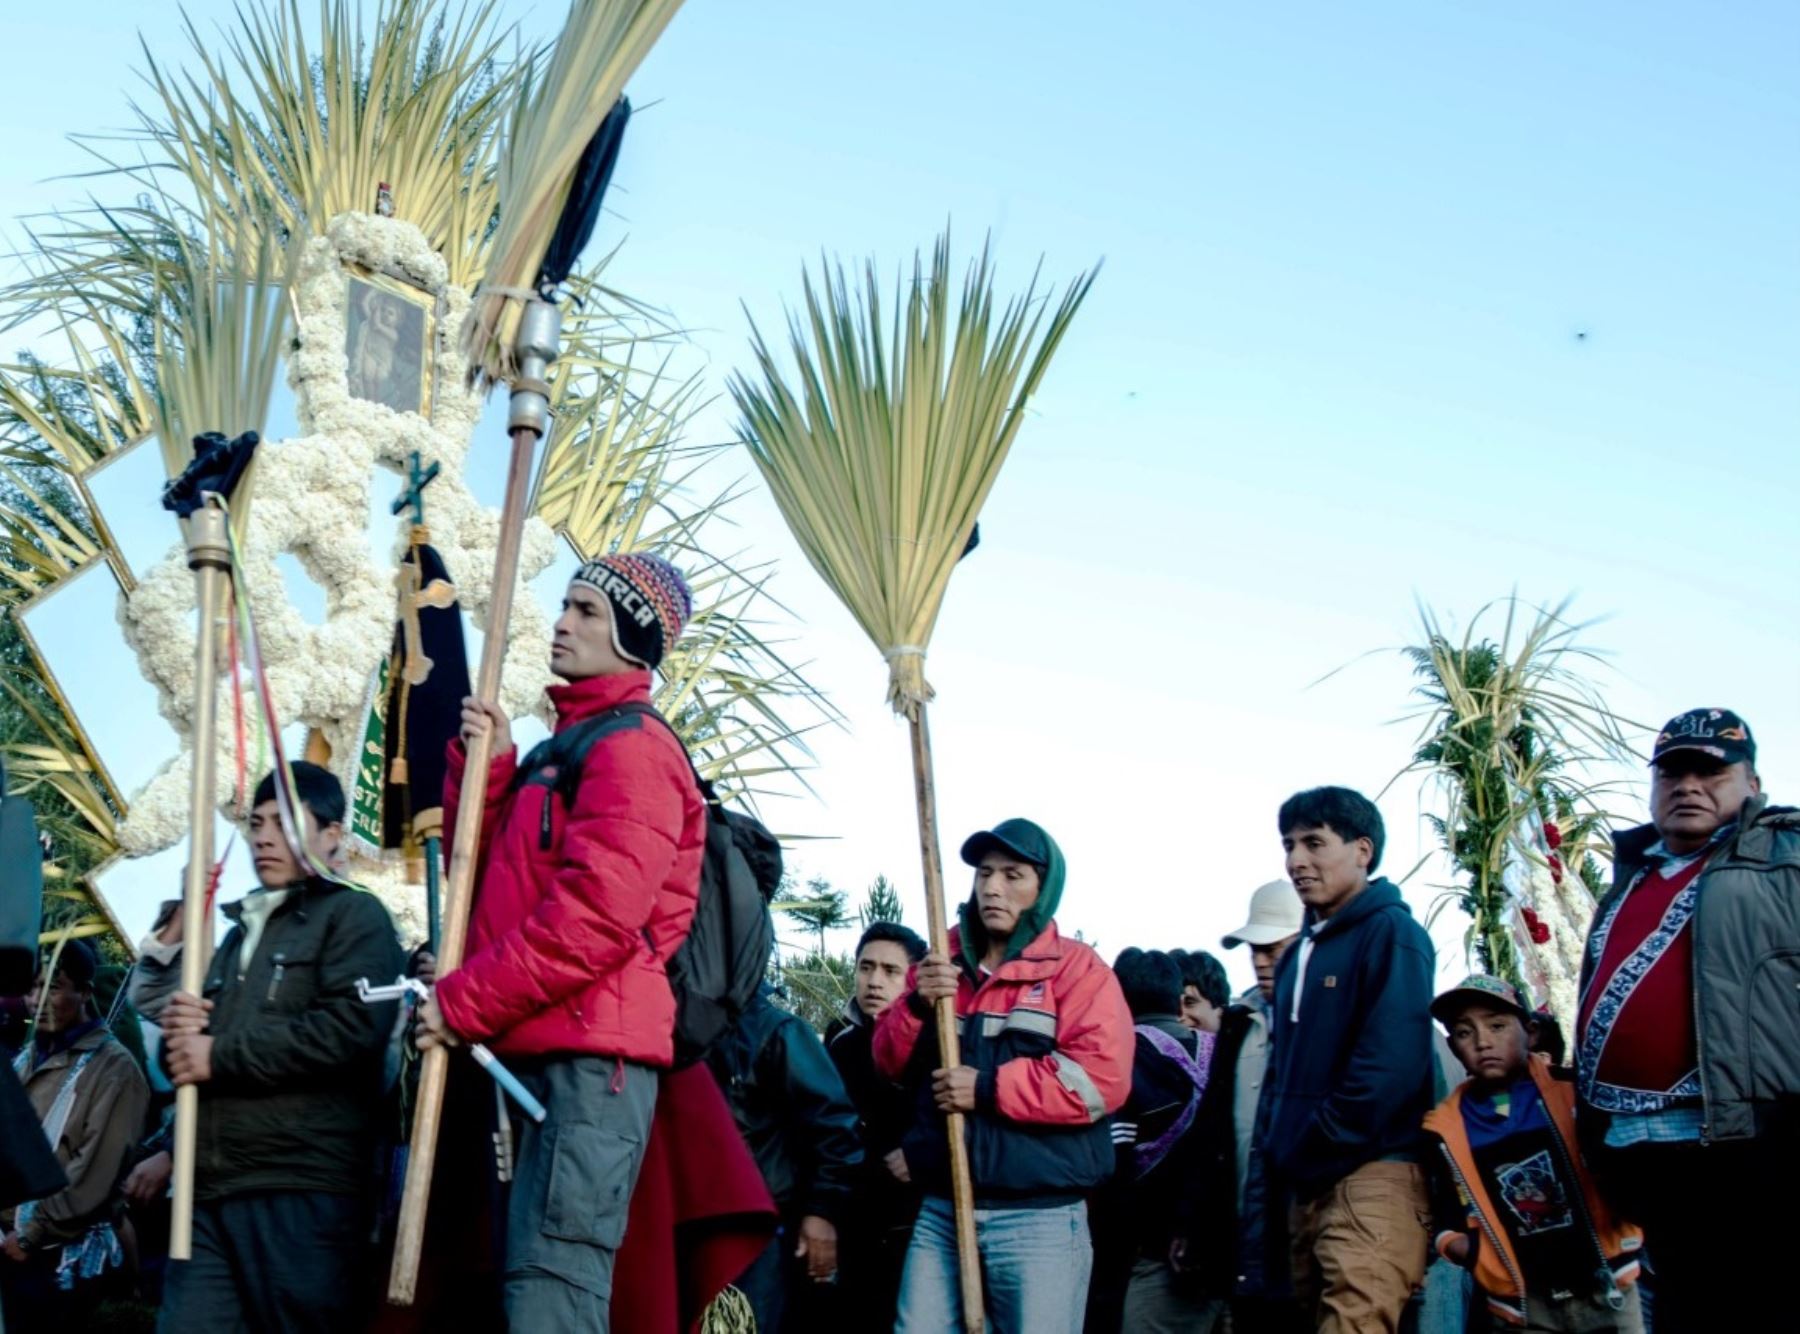 La Fiesta de las Cruces de Porcón es una de las manifestaciones religiosas más importantes de Cajamarca durante la Semana Santa y espera recibir más de 20,000 turistas durante el feriado largo. Foto: Guido Carrascal.